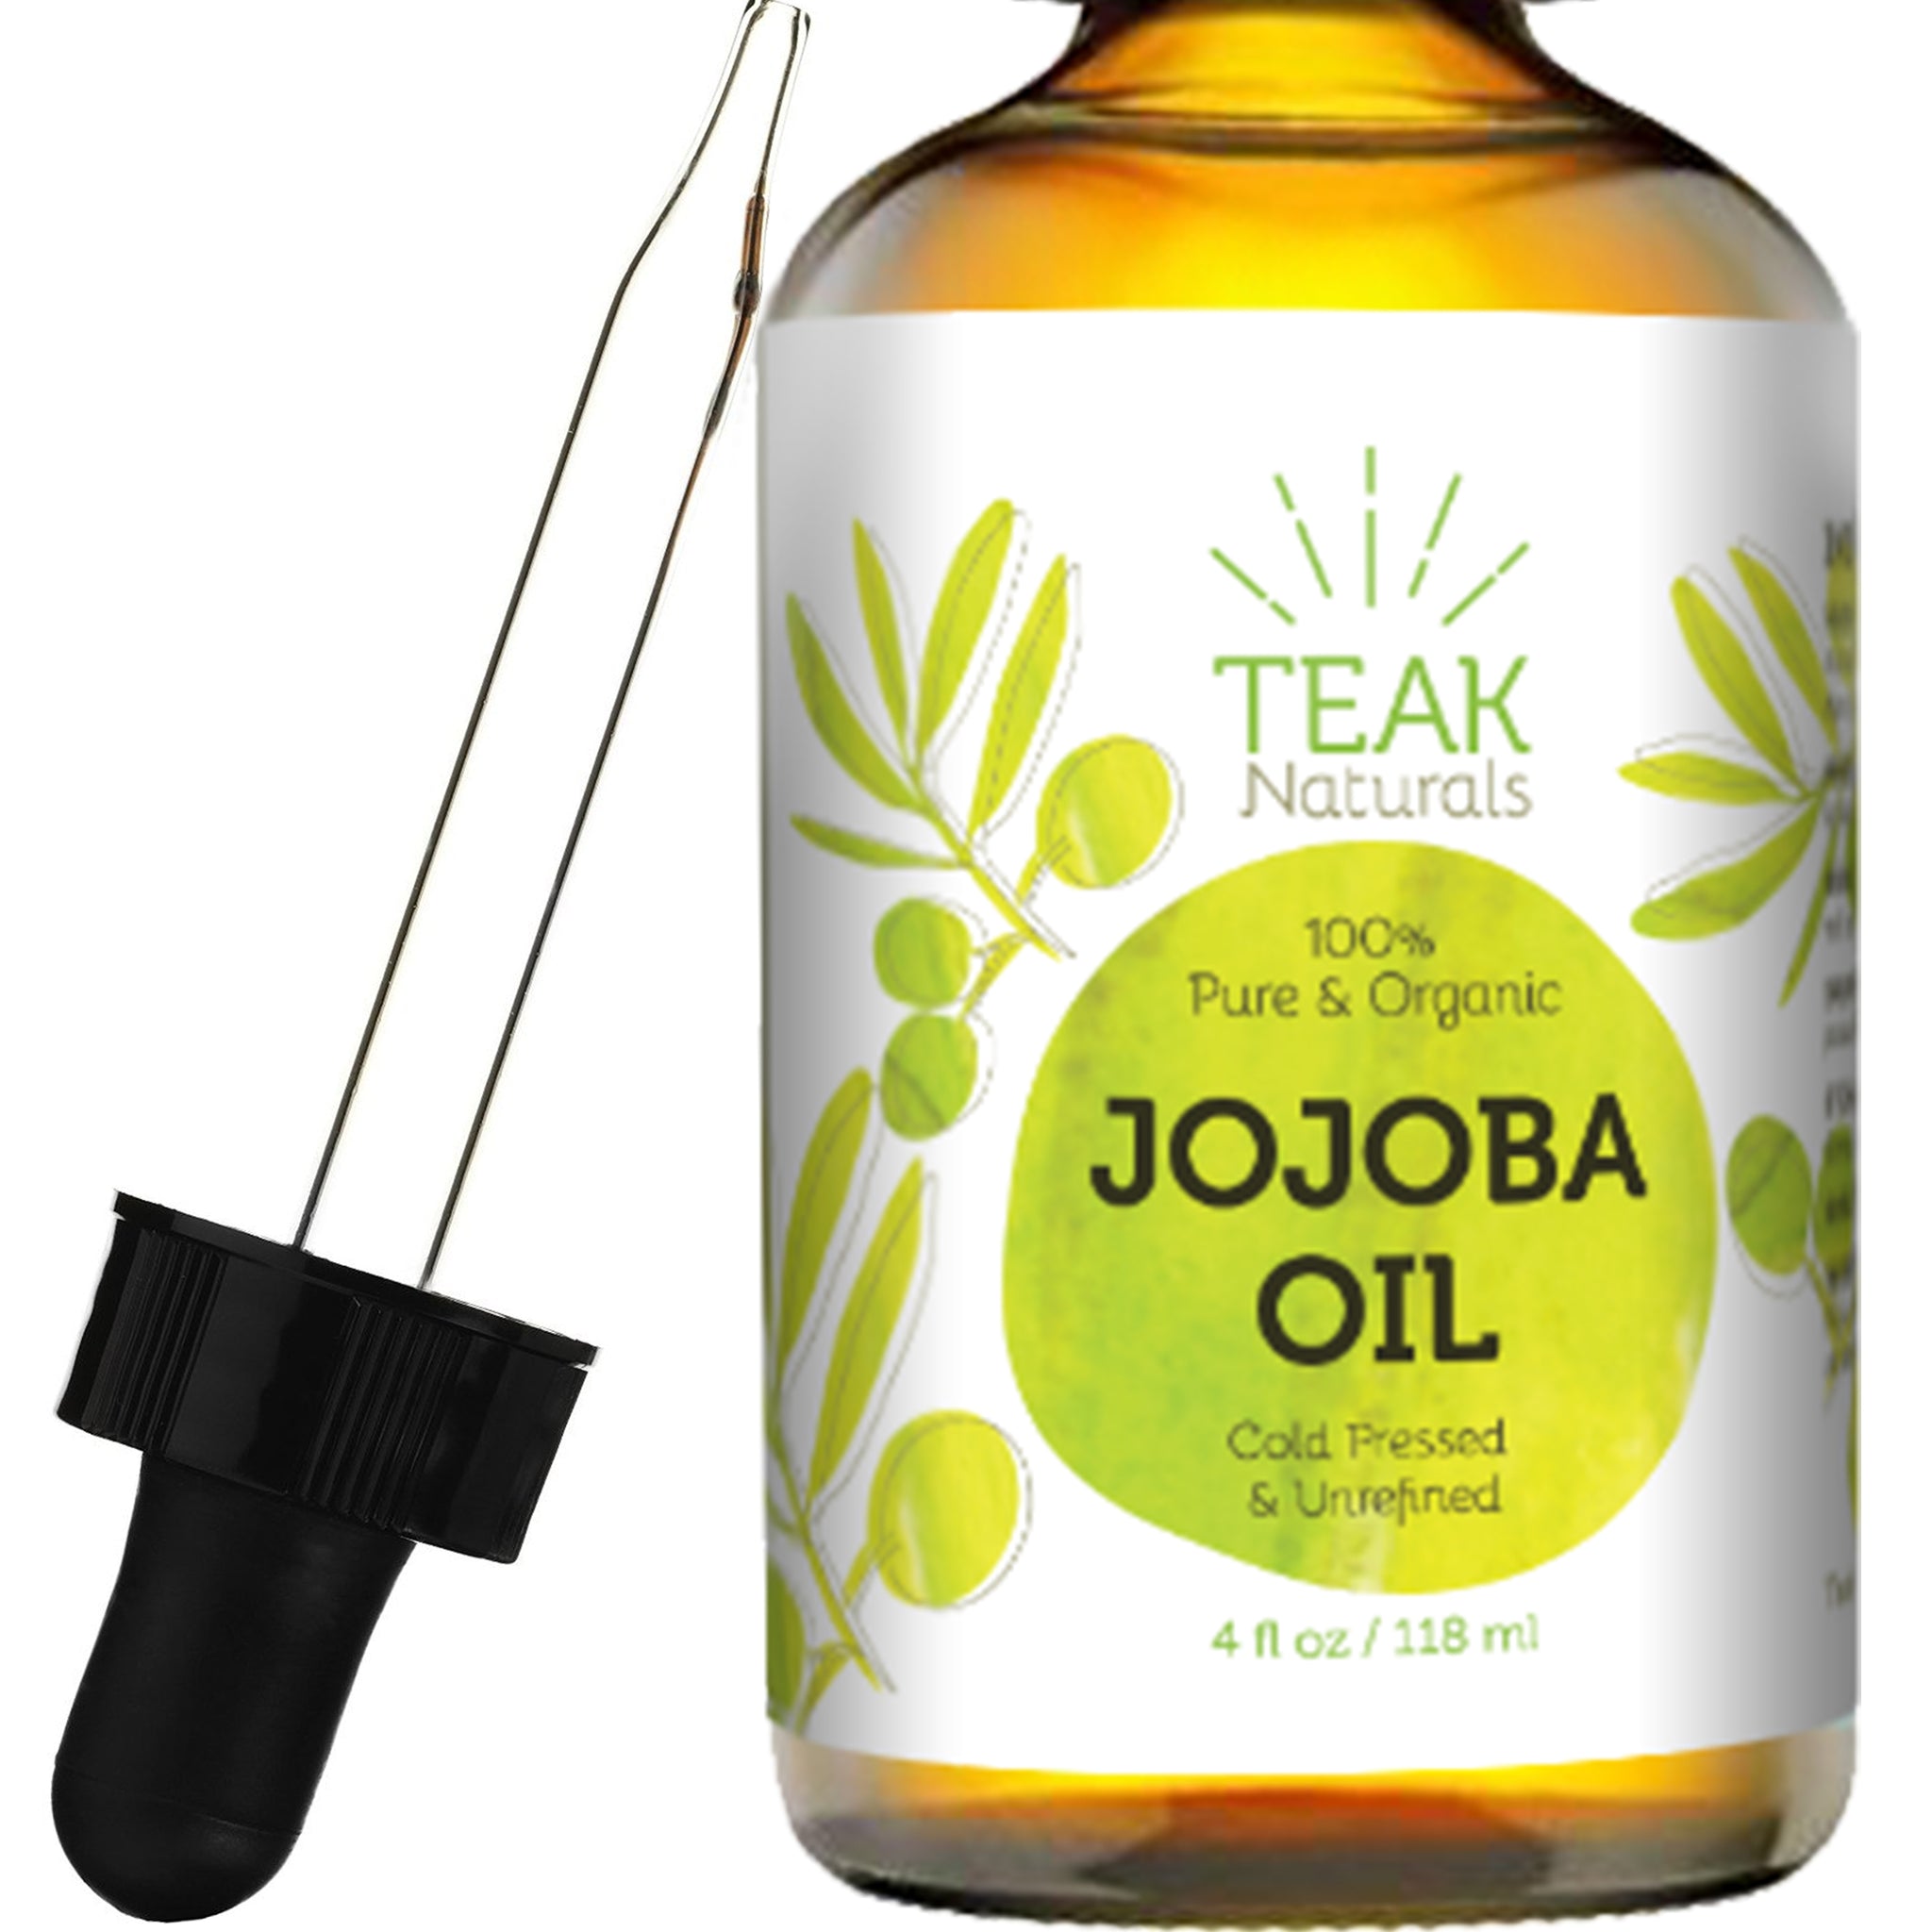 Teak Naturals Jojoba Oil